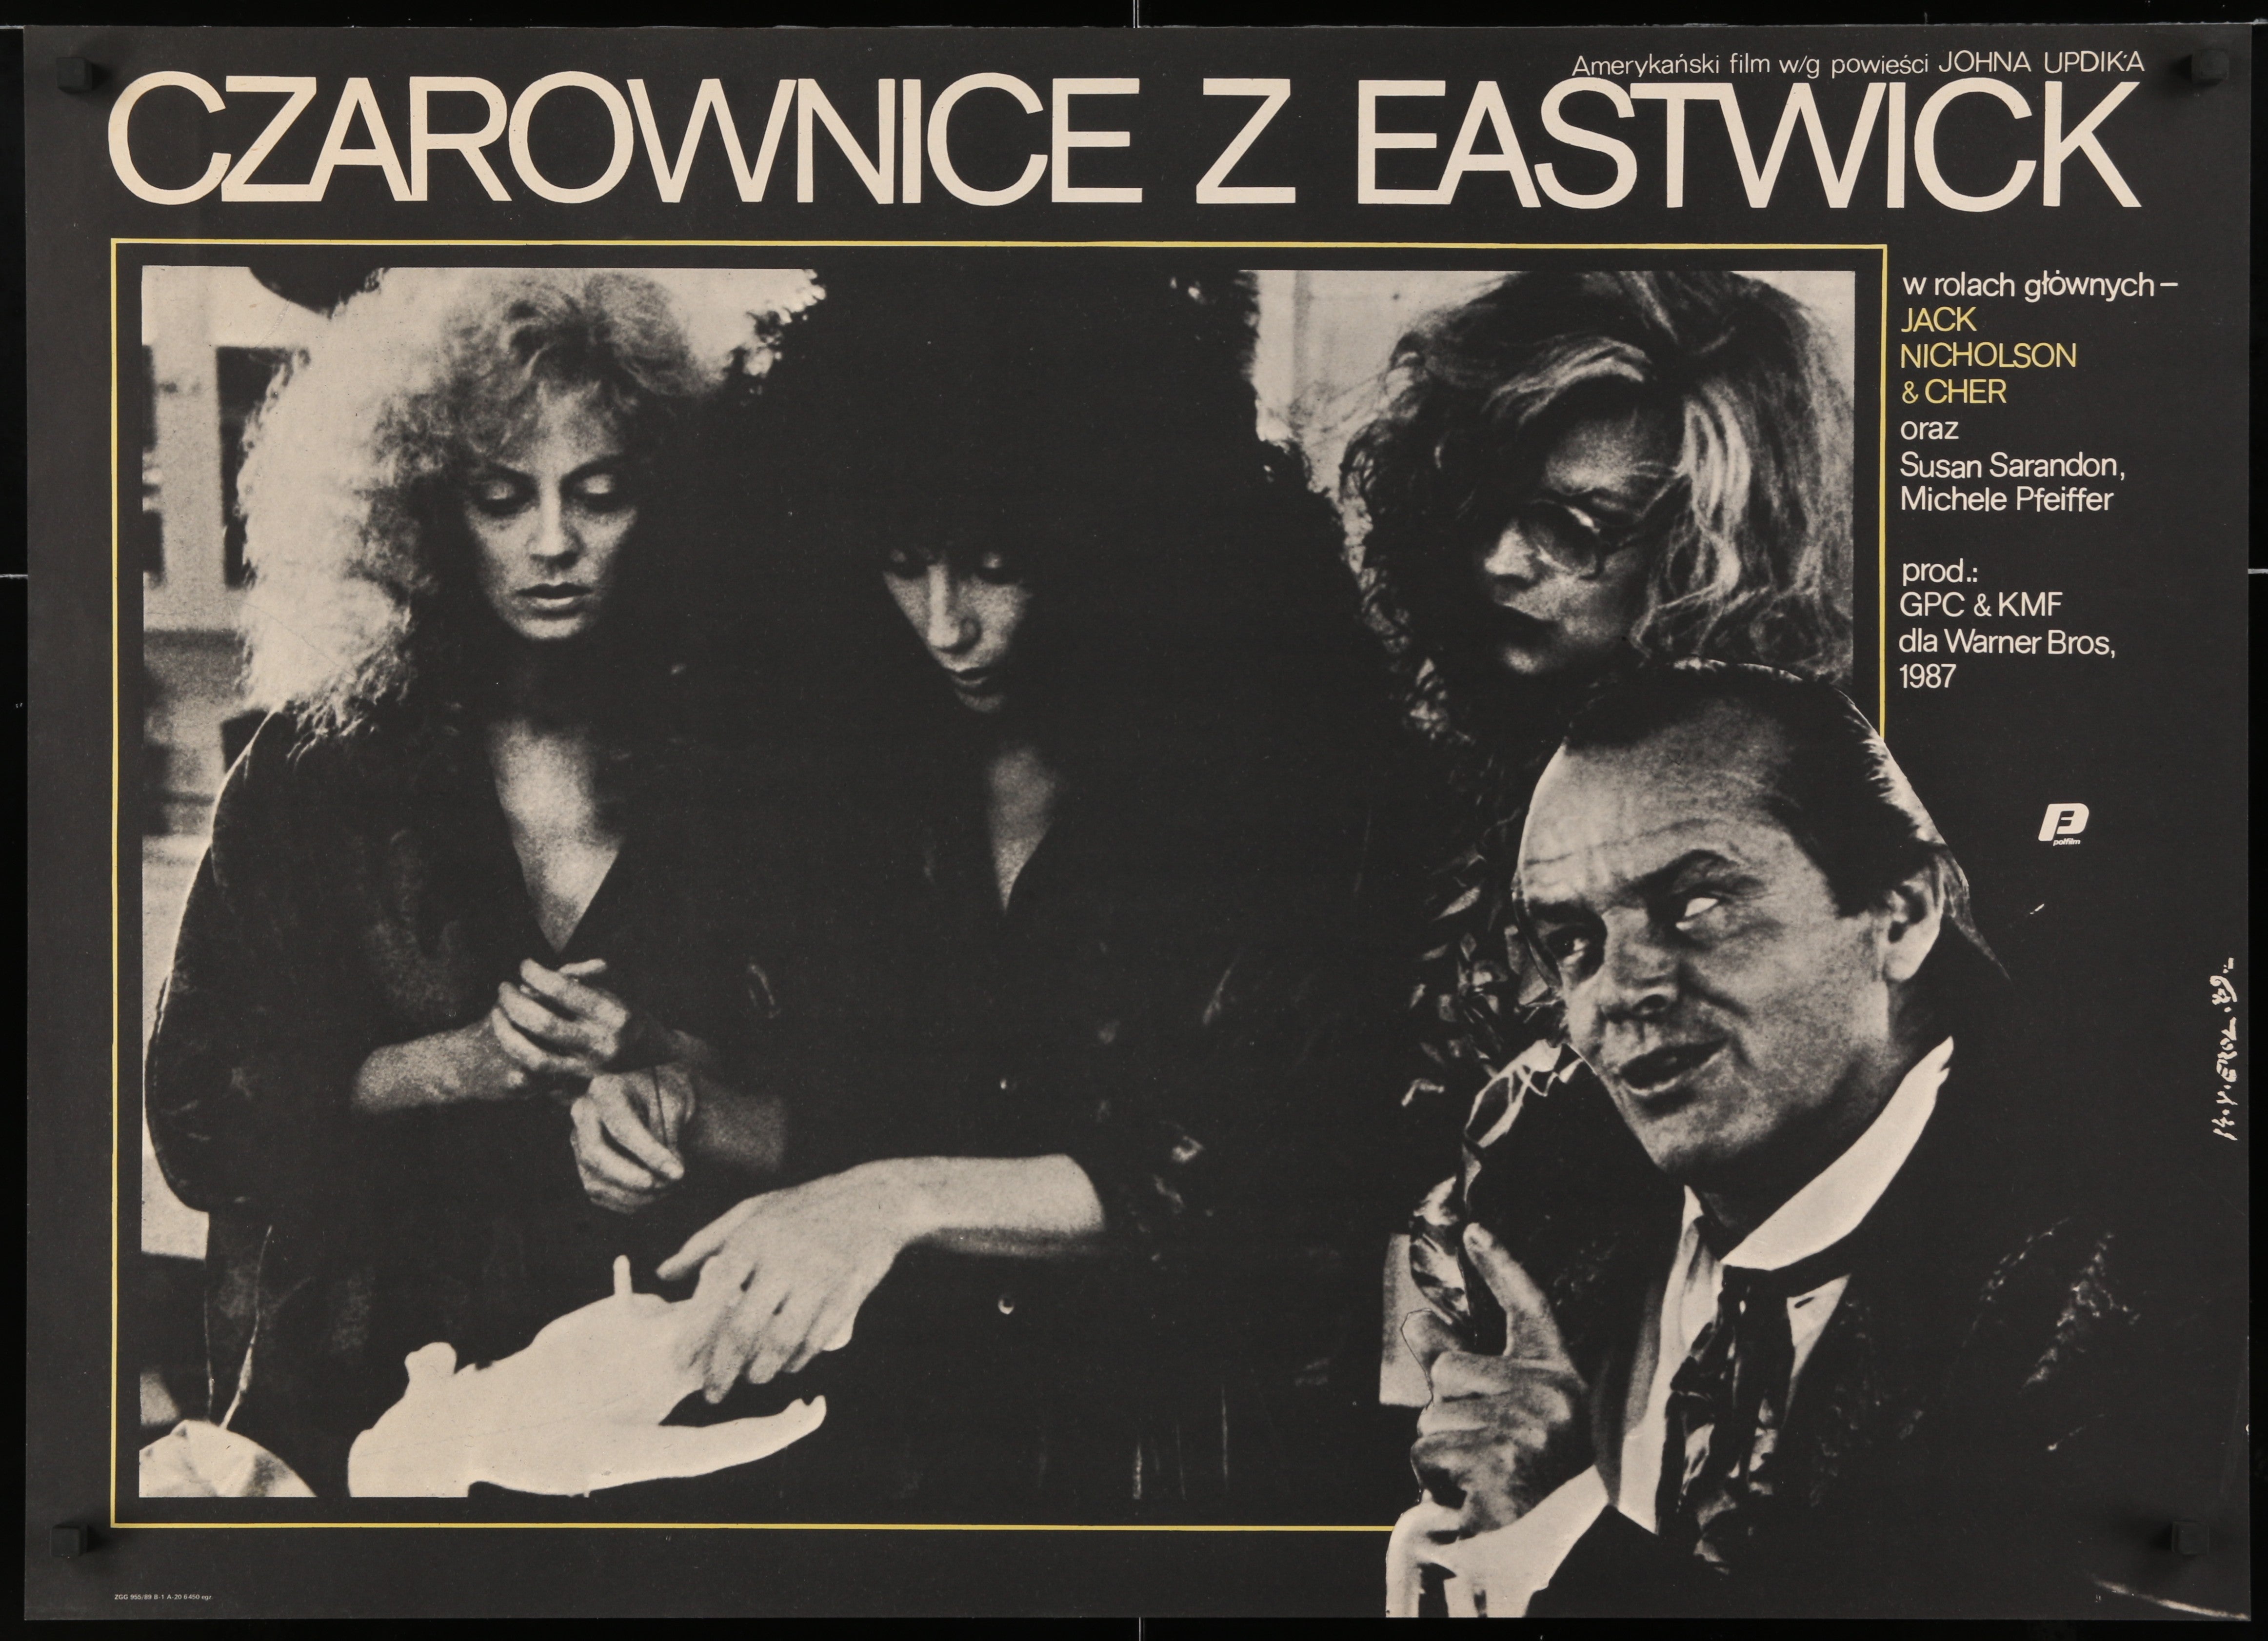 Czarownice z Eastwick (Witches of Eastwick)